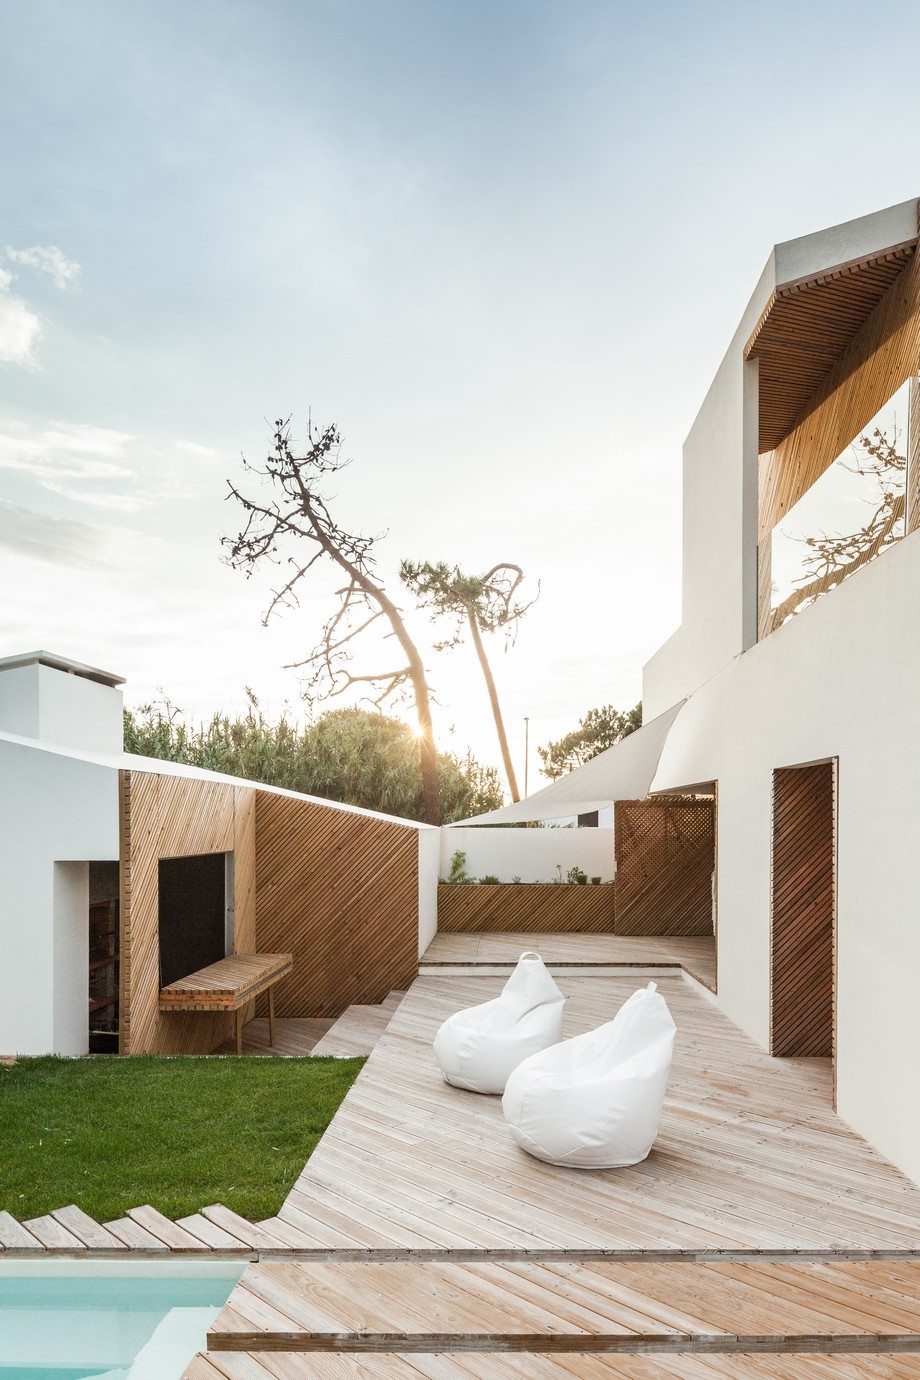 Očarujúci dom z Portugalska: Inšpirujte sa jednoduchosťou jeho línií